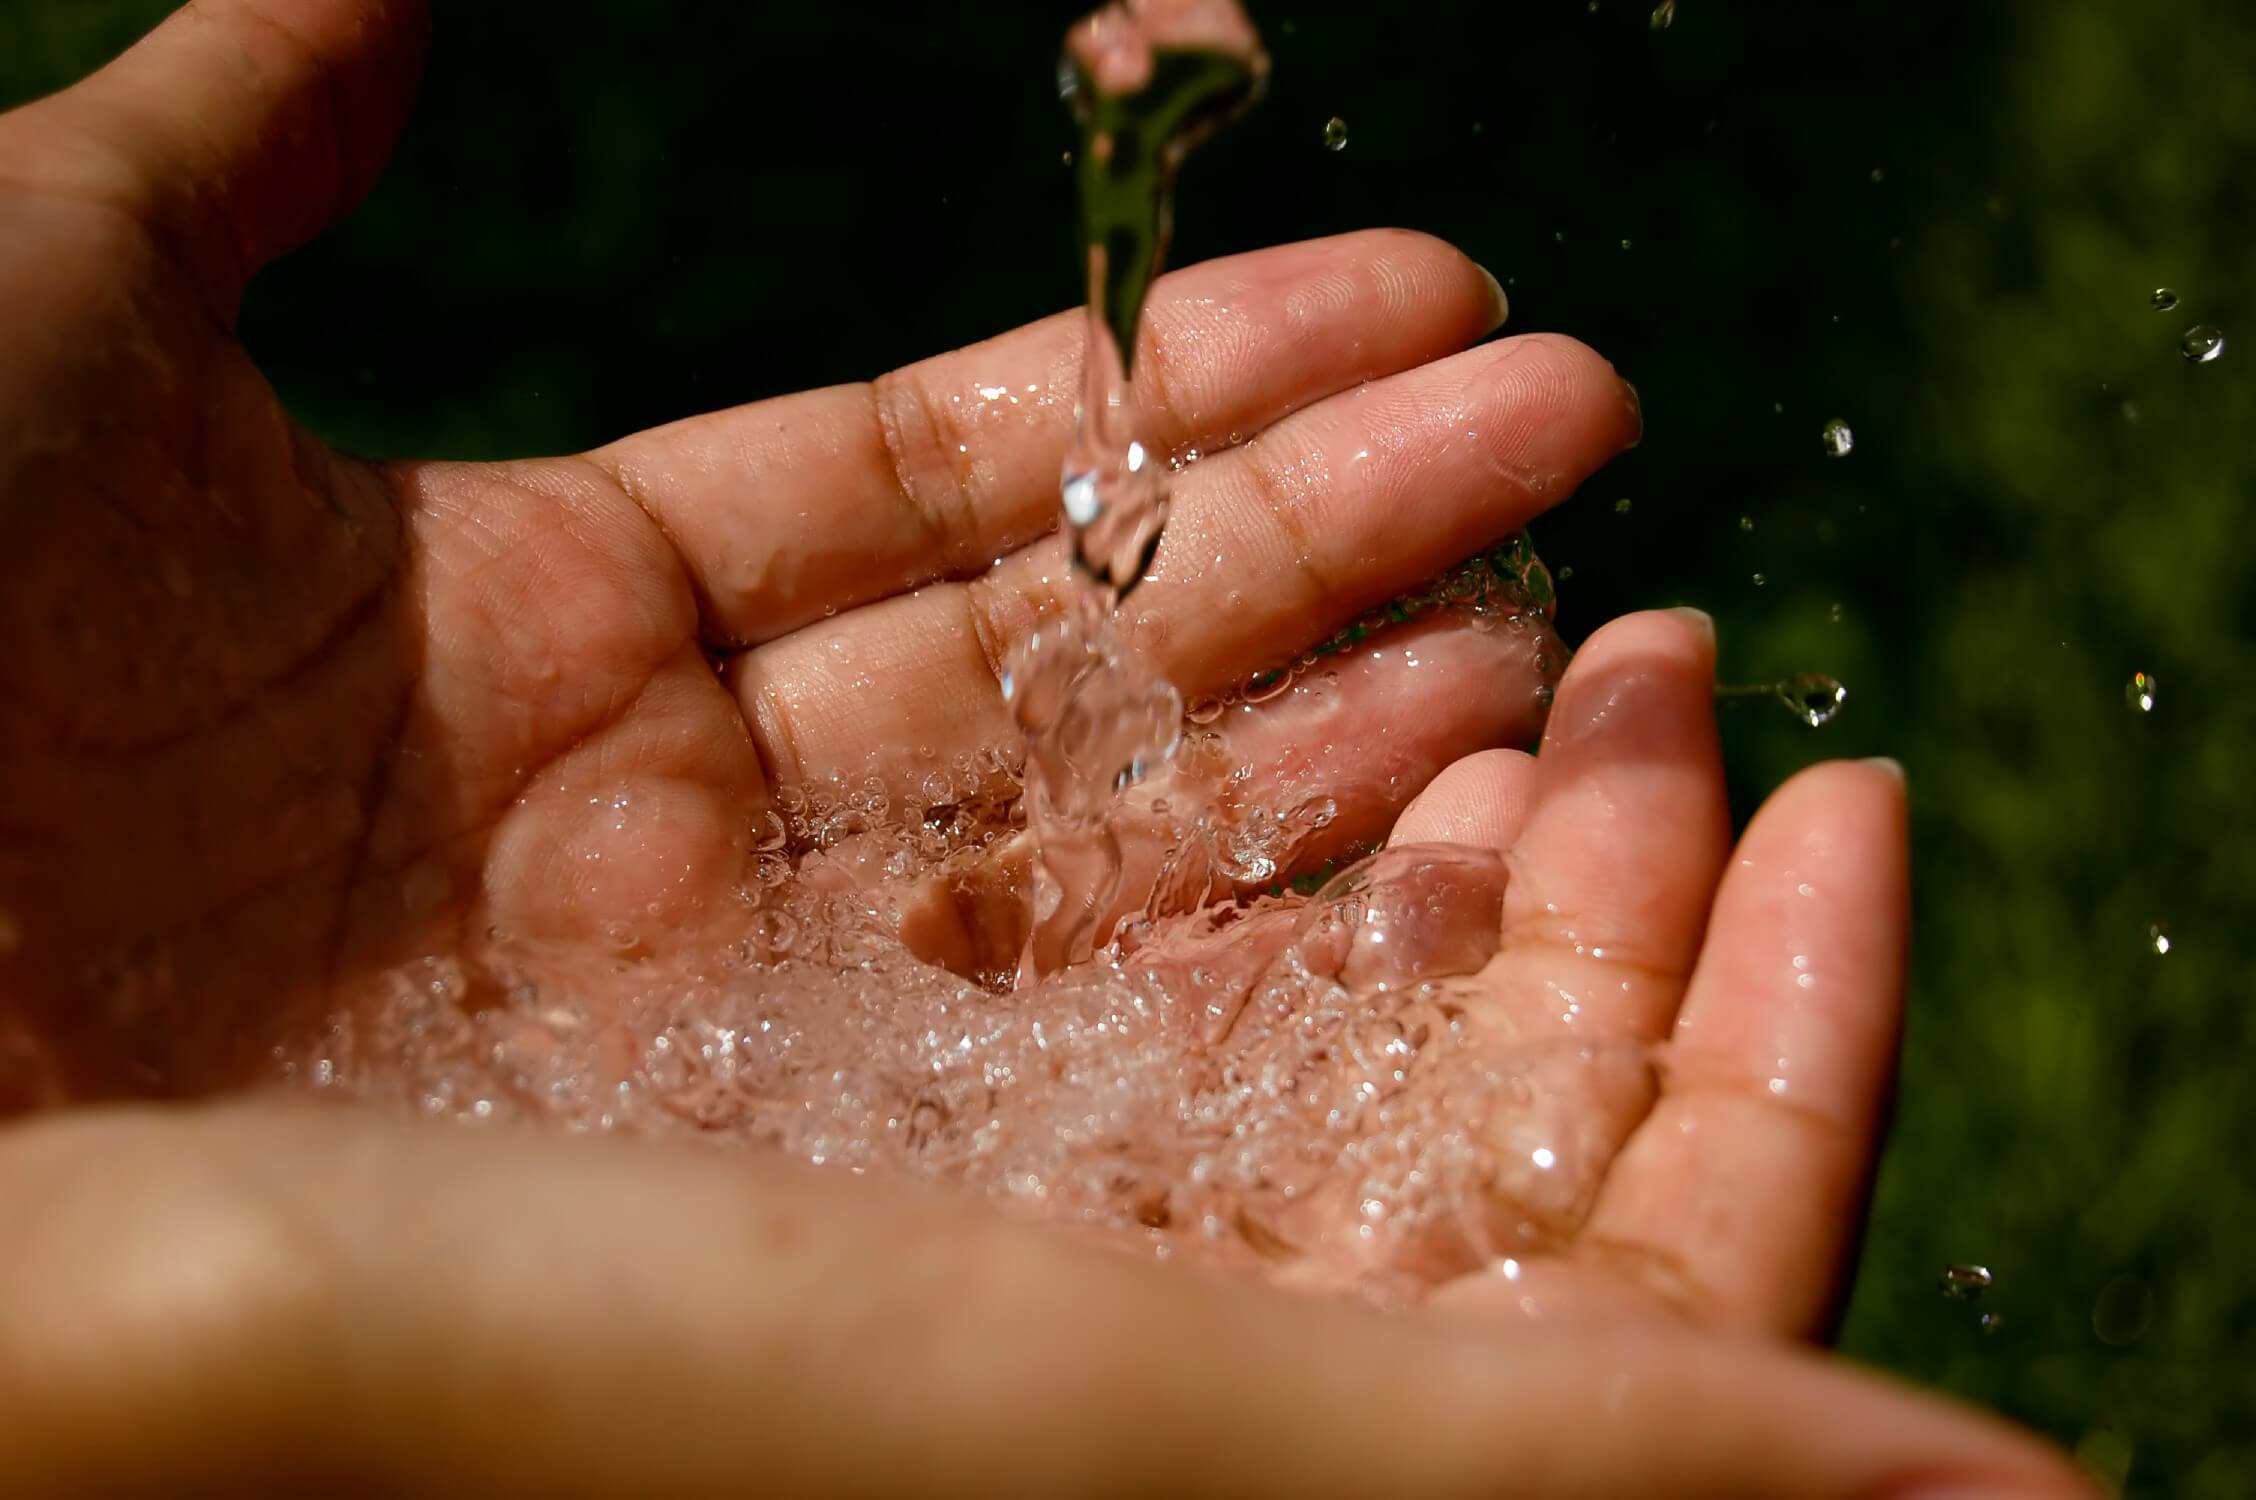 bảo vệ nguồn nước sạch là bảo vệ cuộc sống con người